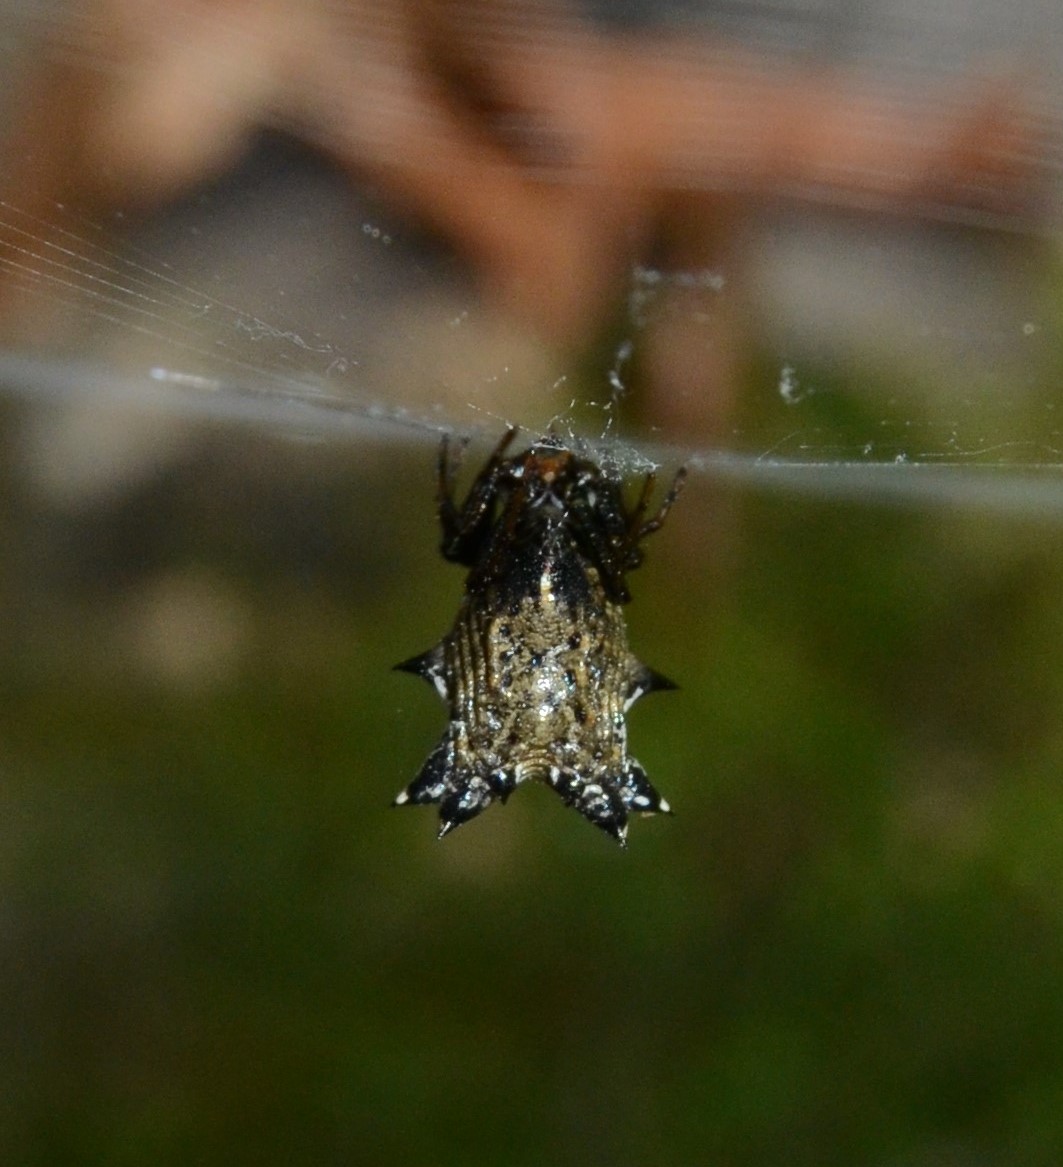 Spined Micrathena Spider